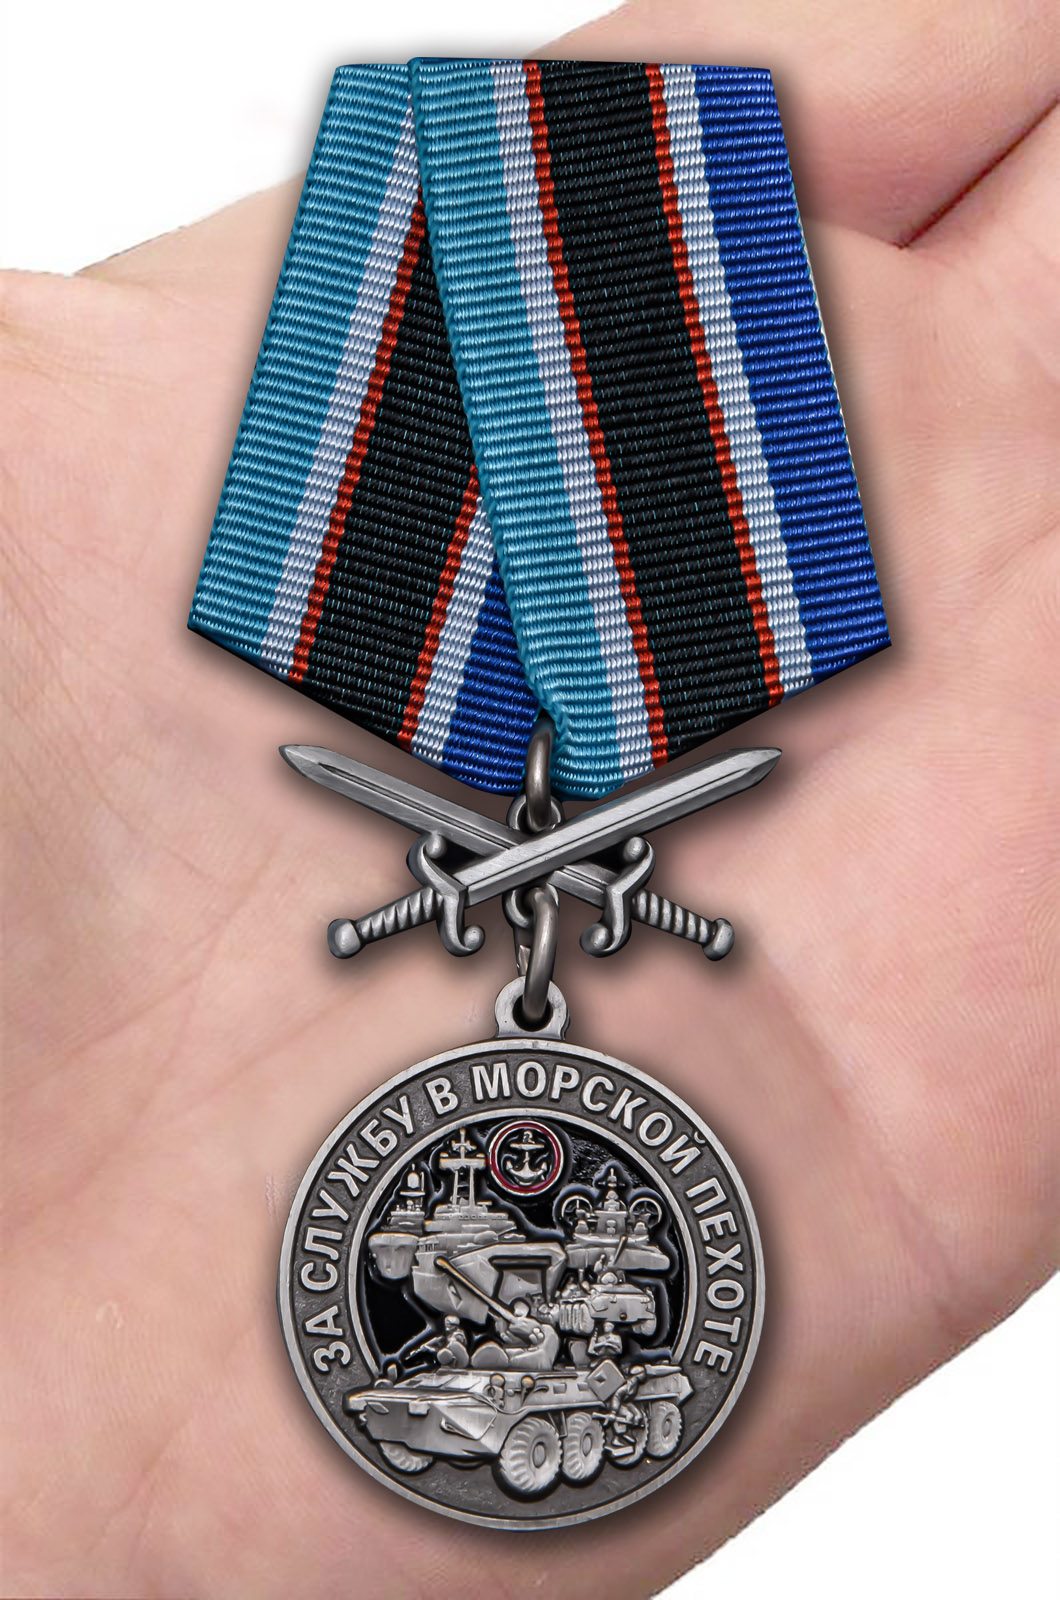 Медаль "За службу в Морской пехоте" - лучший подарок морпеху.